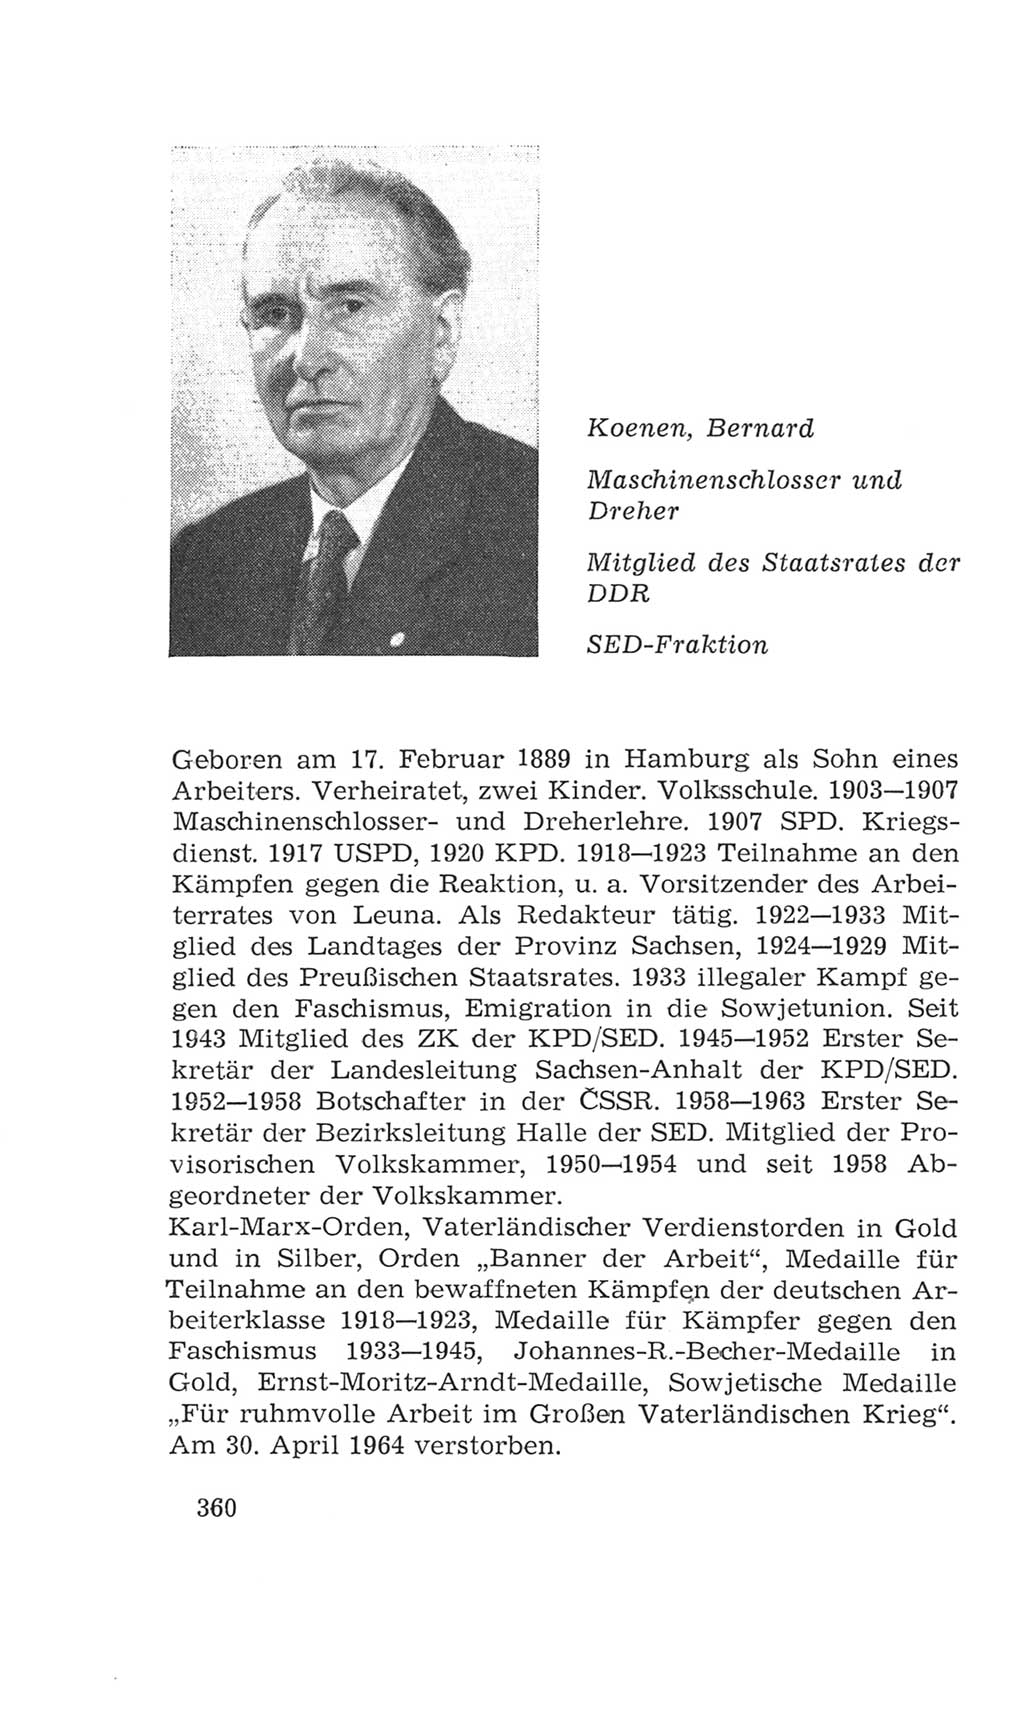 Volkskammer (VK) der Deutschen Demokratischen Republik (DDR), 4. Wahlperiode 1963-1967, Seite 360 (VK. DDR 4. WP. 1963-1967, S. 360)